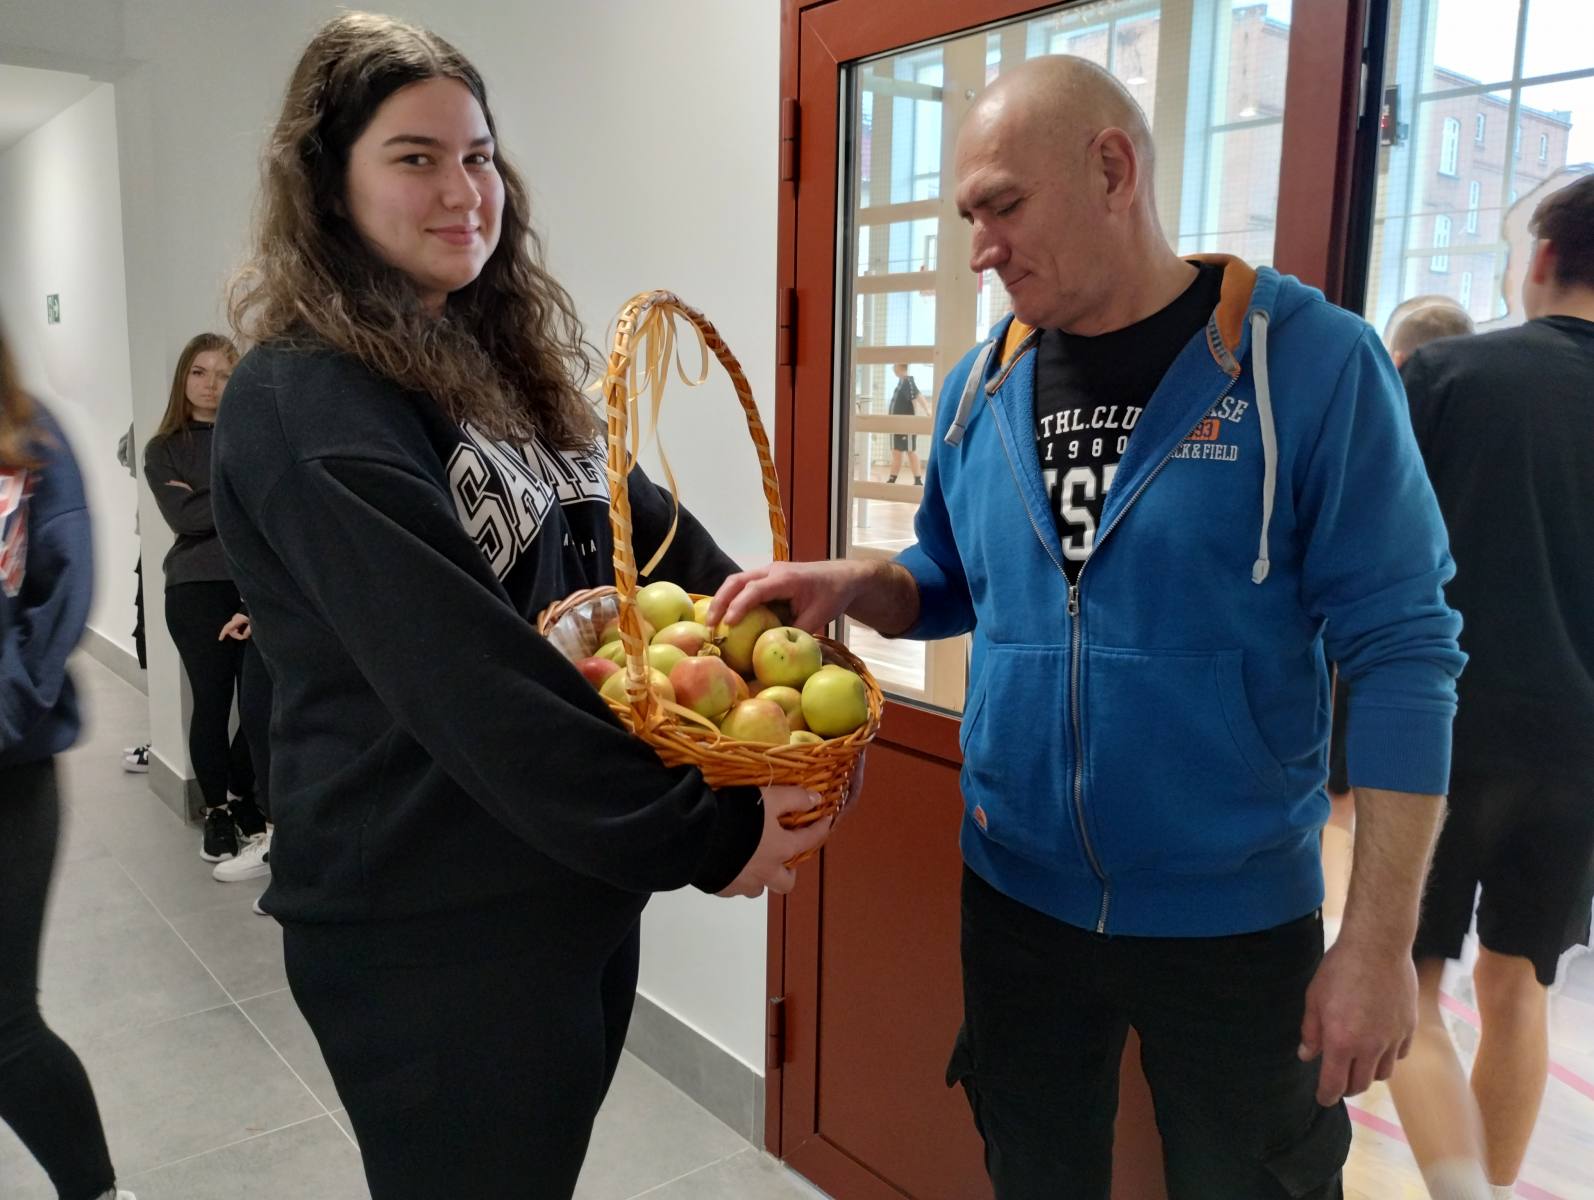 Codzienna porcja zdrowia - jabłka dla uczniów ZSZ Rawicz